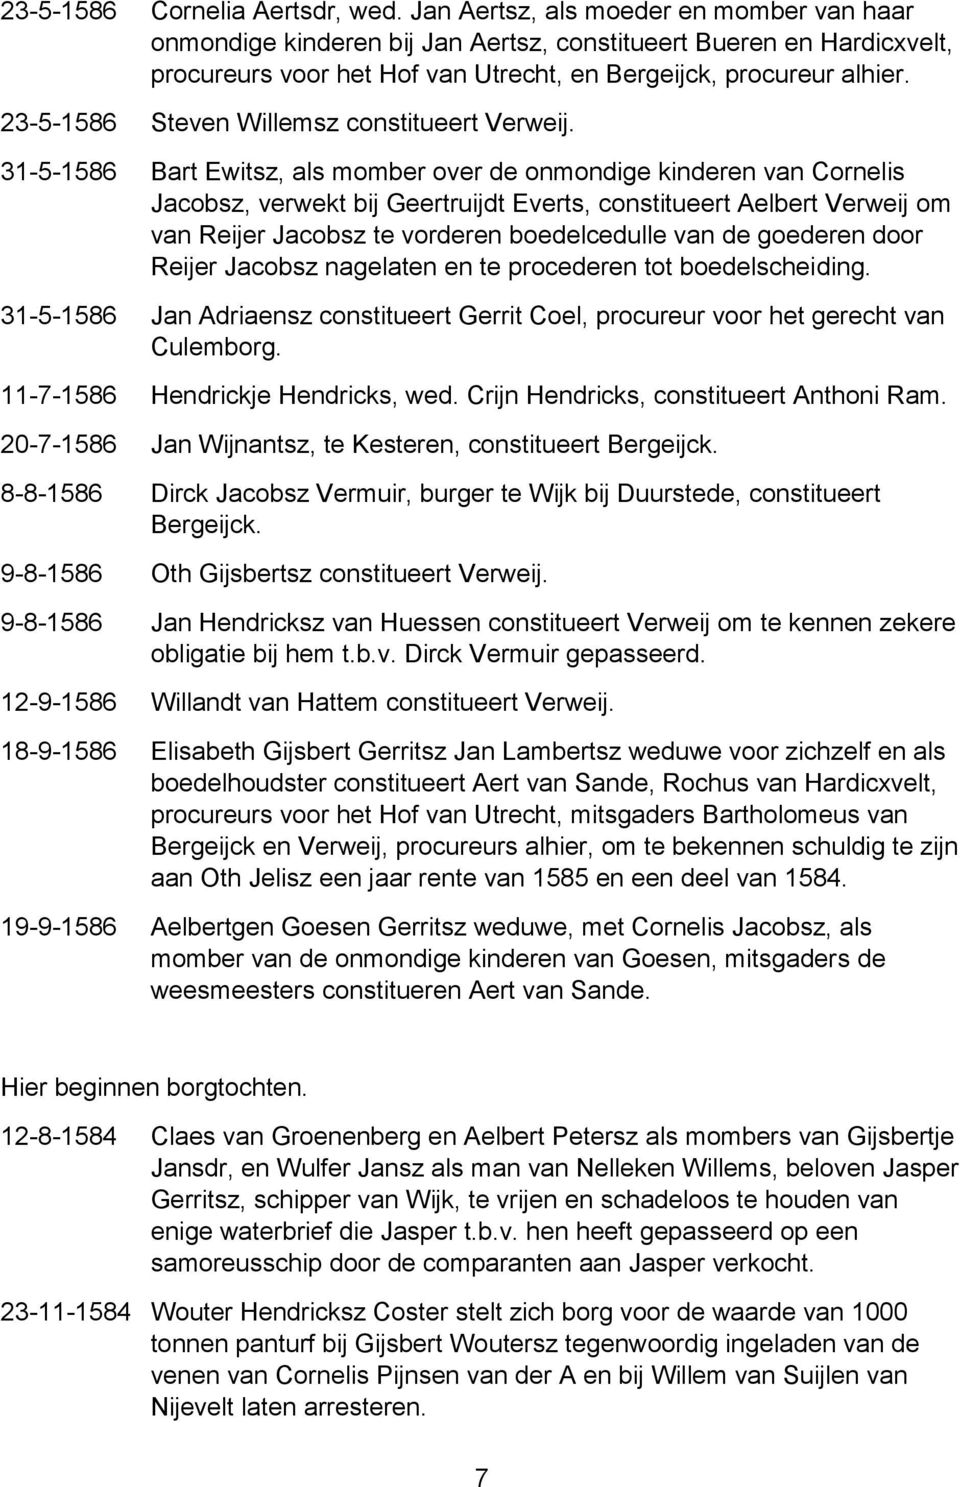 23-5-1586 Steven Willemsz constitueert Verweij.